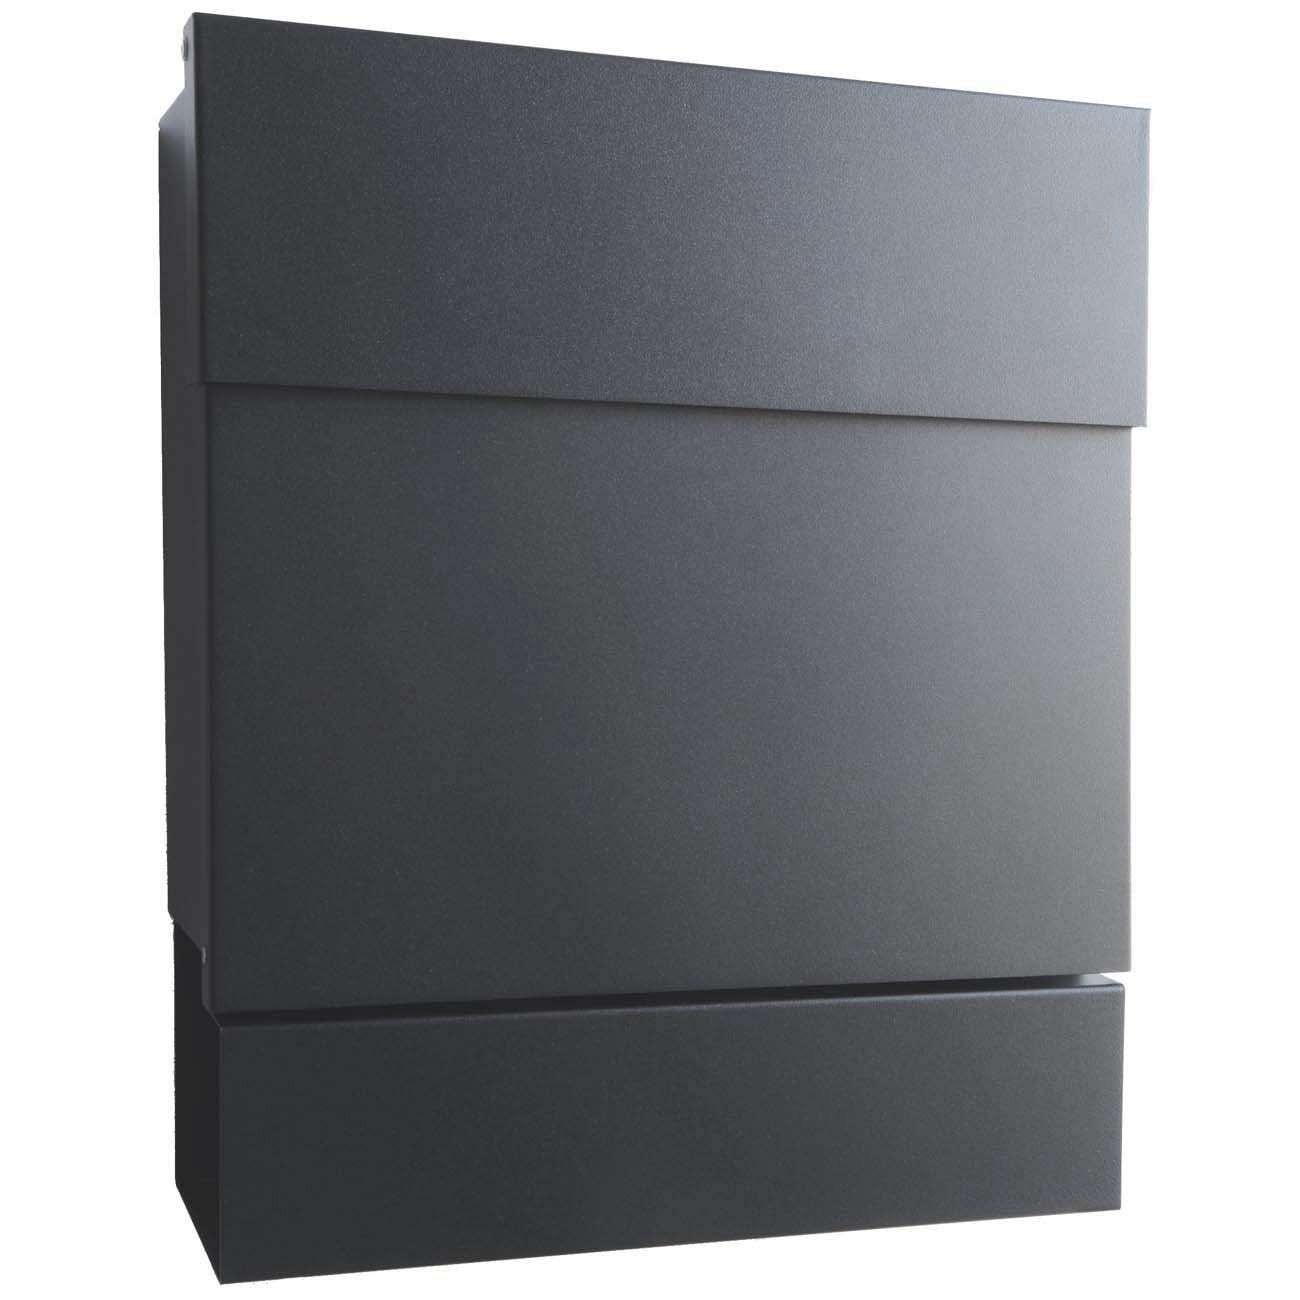 Radius Briefkasten »Letterman 5 Radius Design Briefkasten mit Zeitungsfach  anthrazit-grau (RAL 7016), moderner Wand-Postkasten«